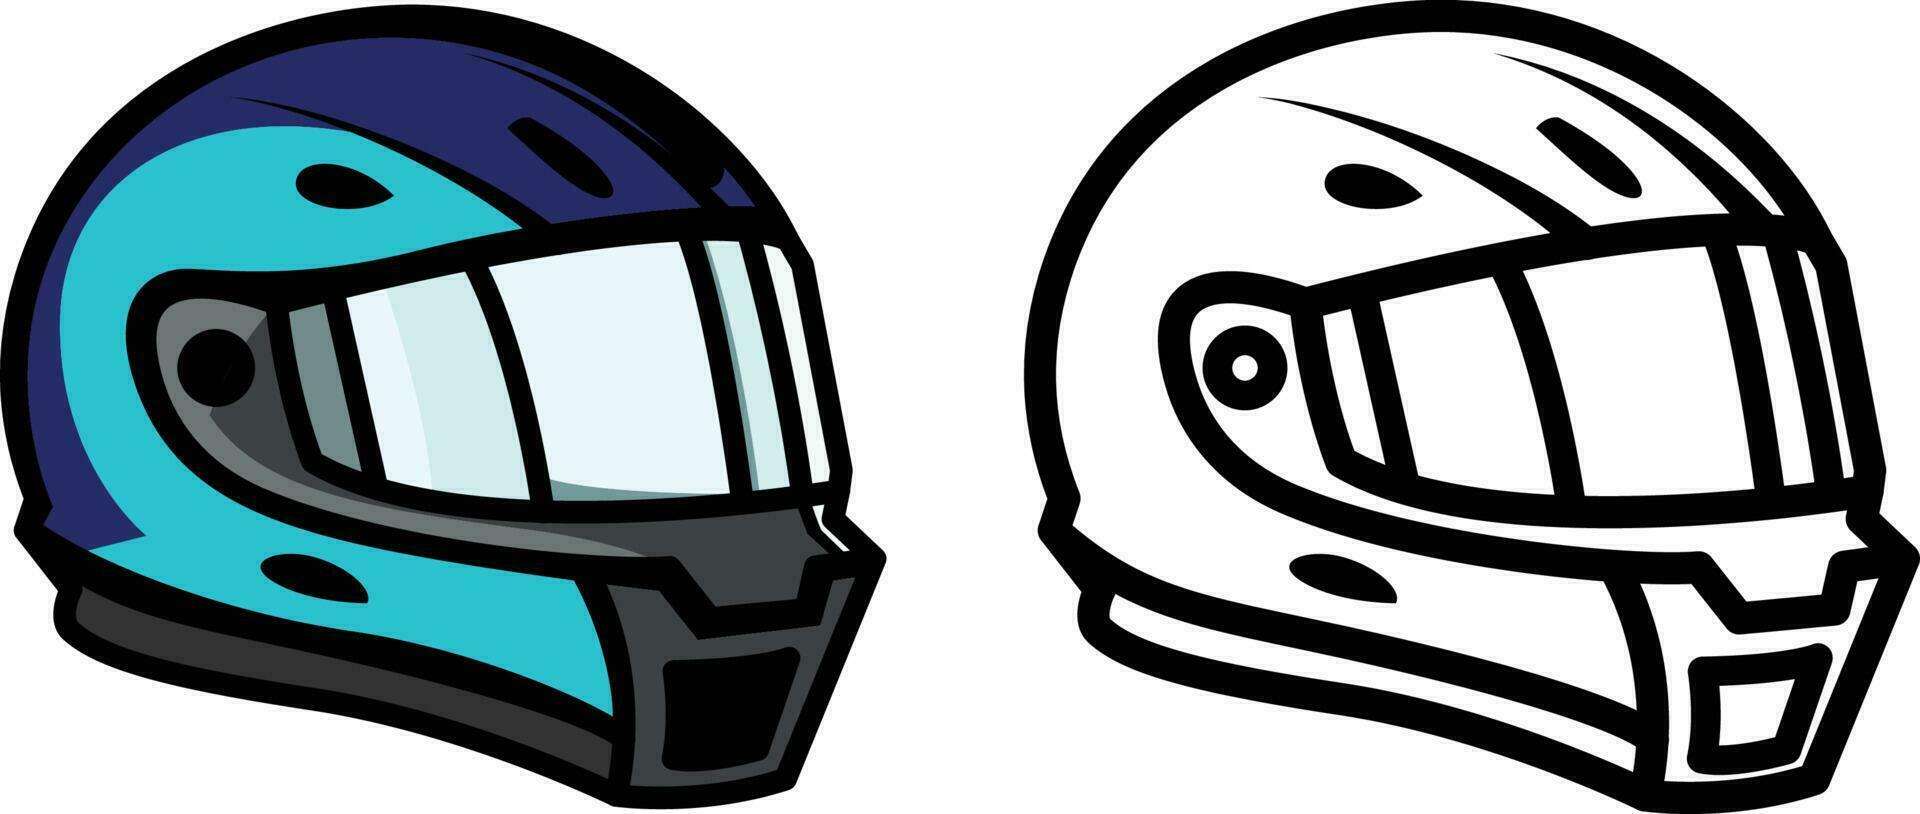 motocicletta sicurezza casco pieno viso testa protezione nero e bianca linea disegno e colorato vettore illustrazione